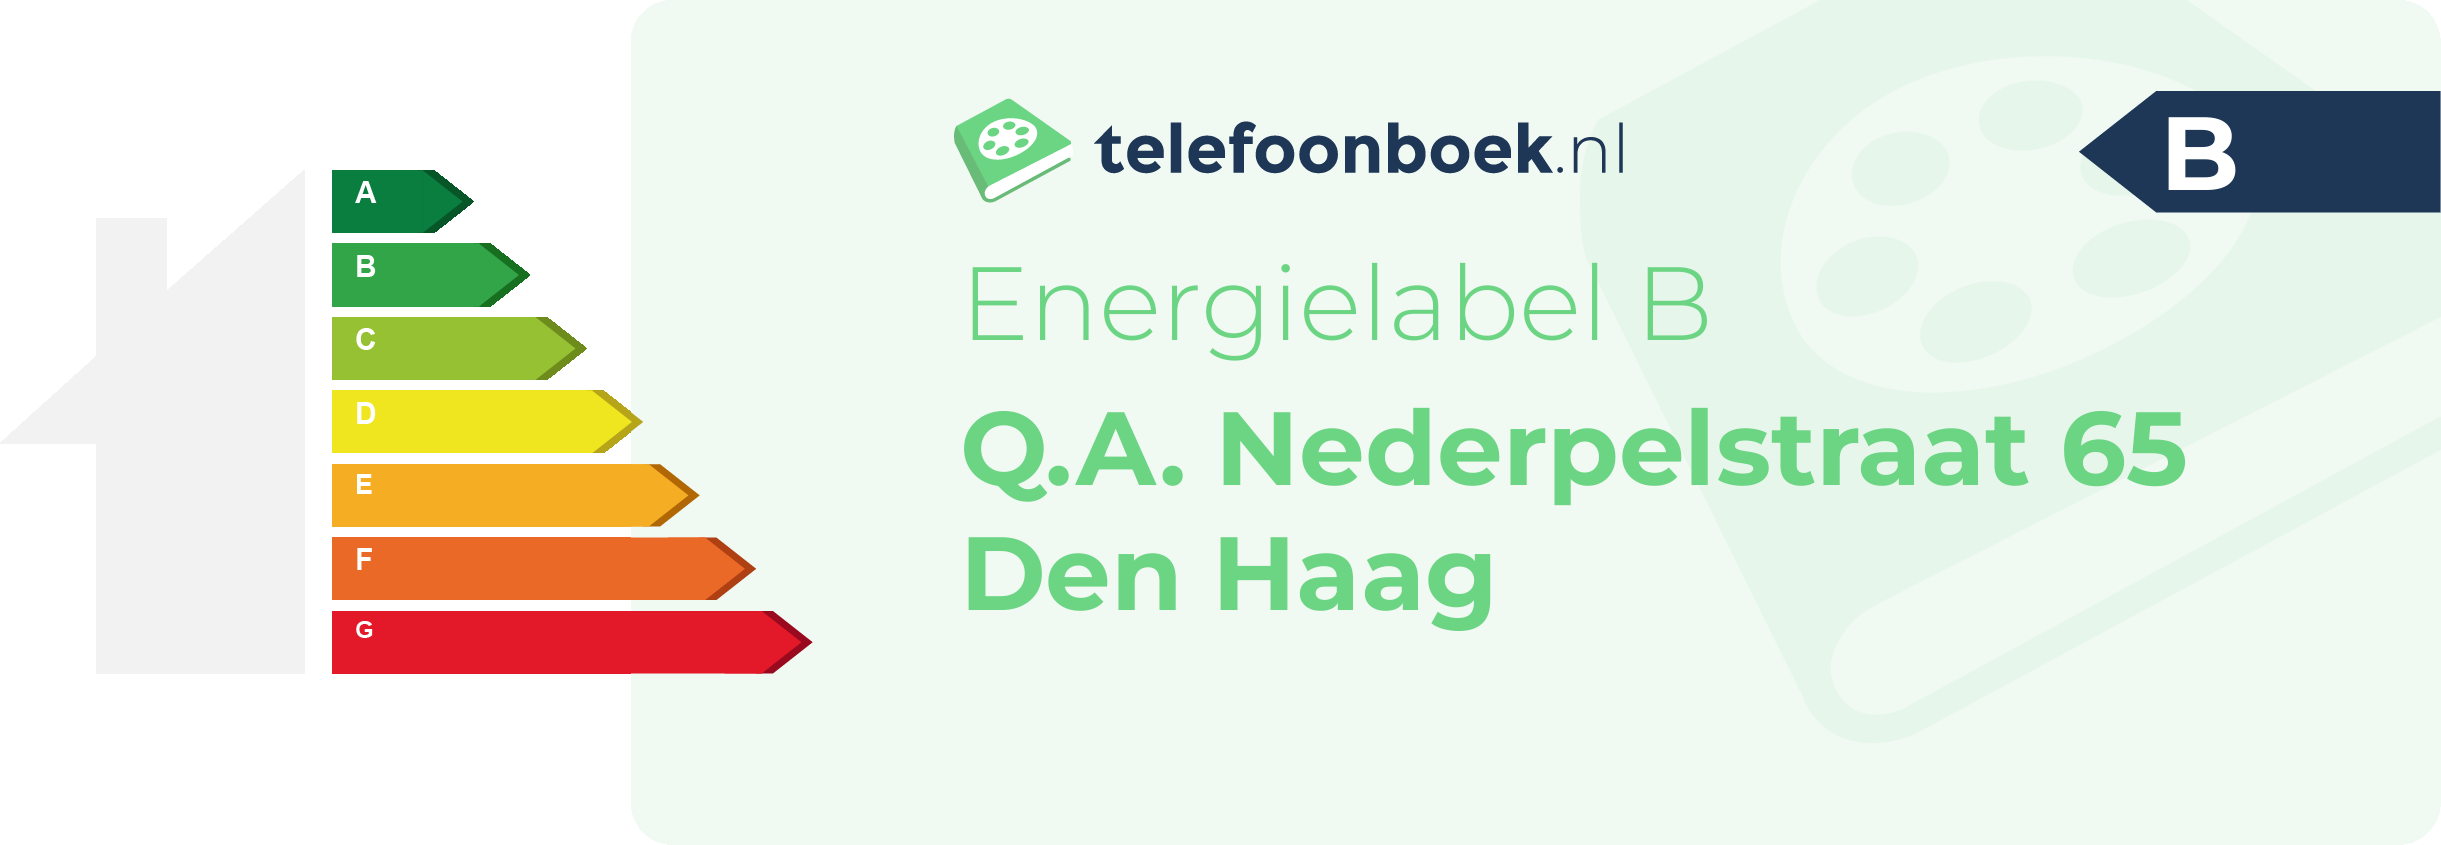 Energielabel Q.A. Nederpelstraat 65 Den Haag